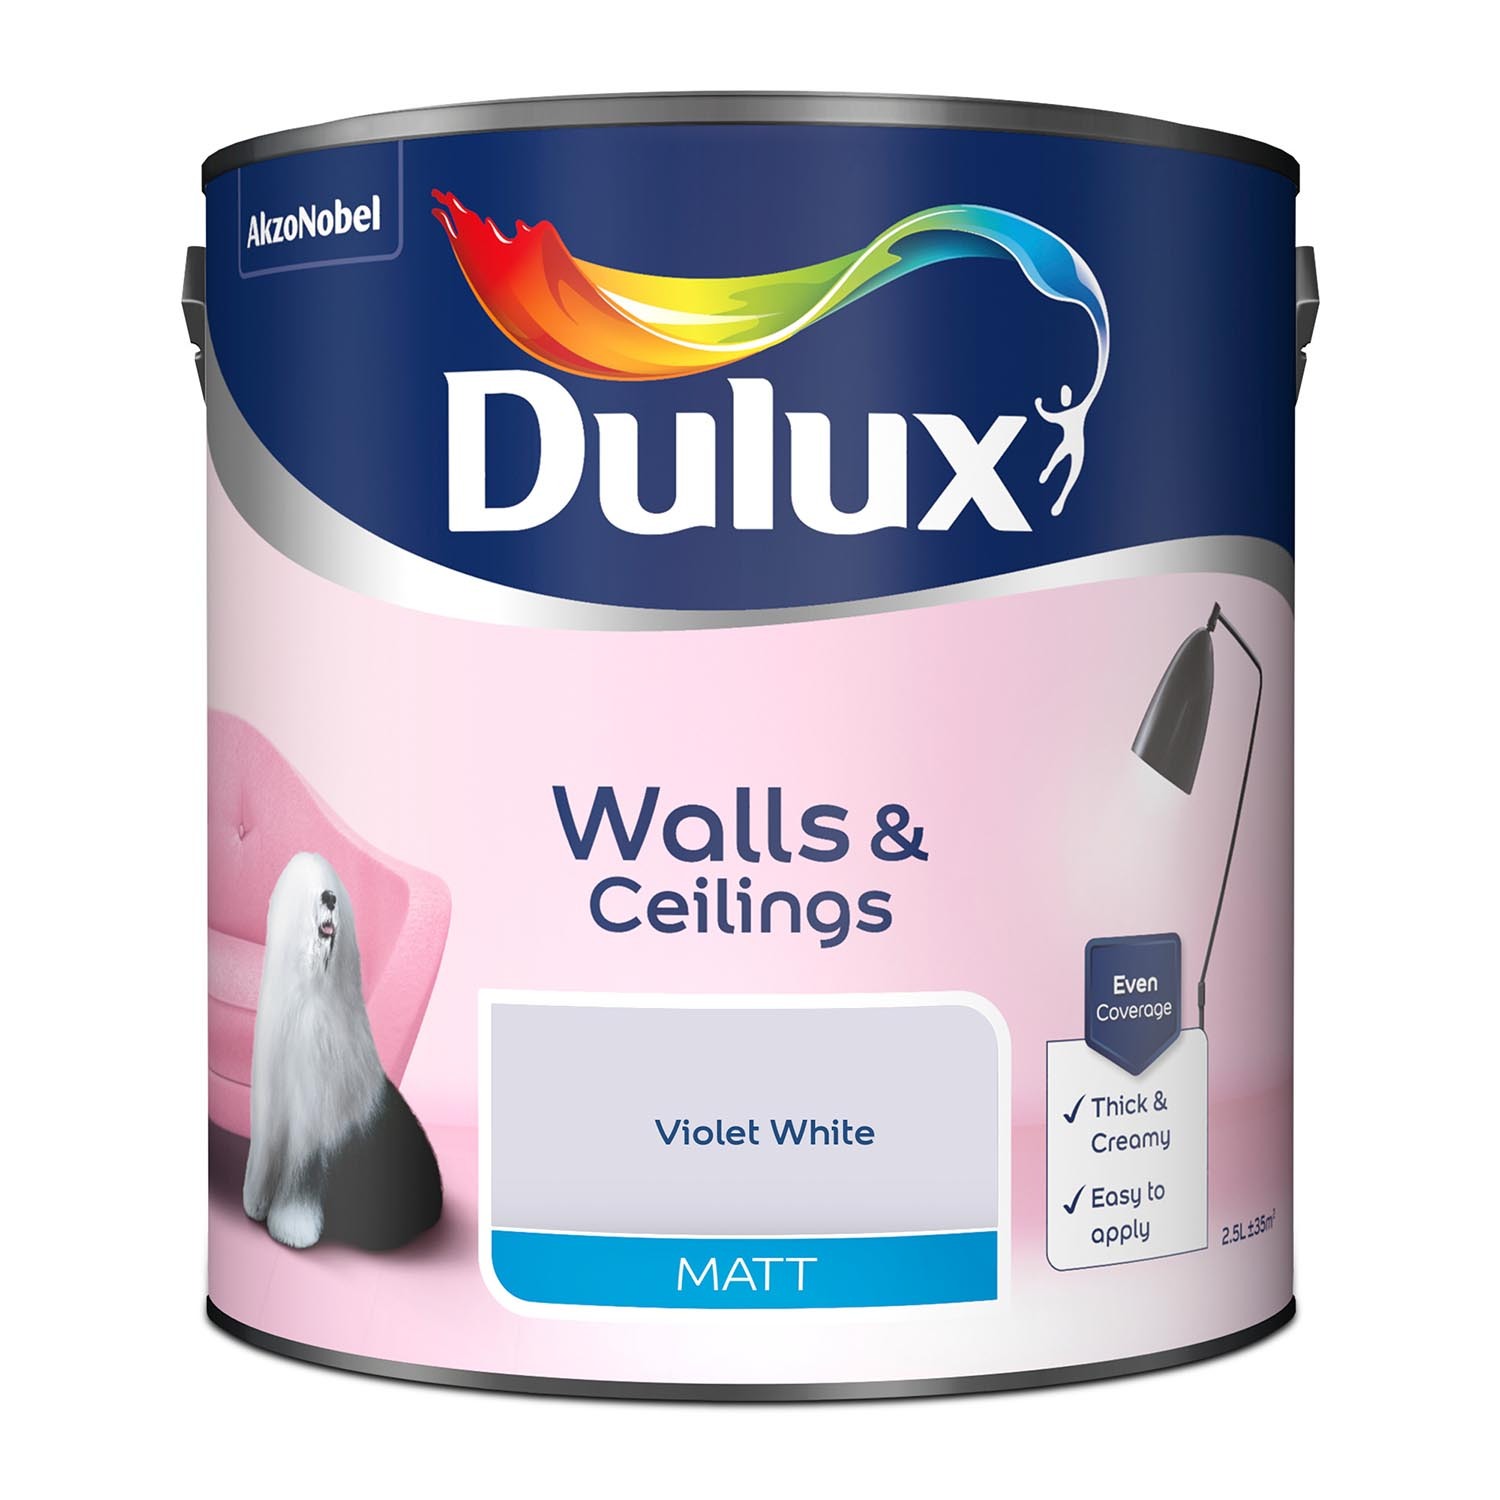 Dulux Walls & Ceilings Violet White Matt Emulsion Paint 2.5L Image 2